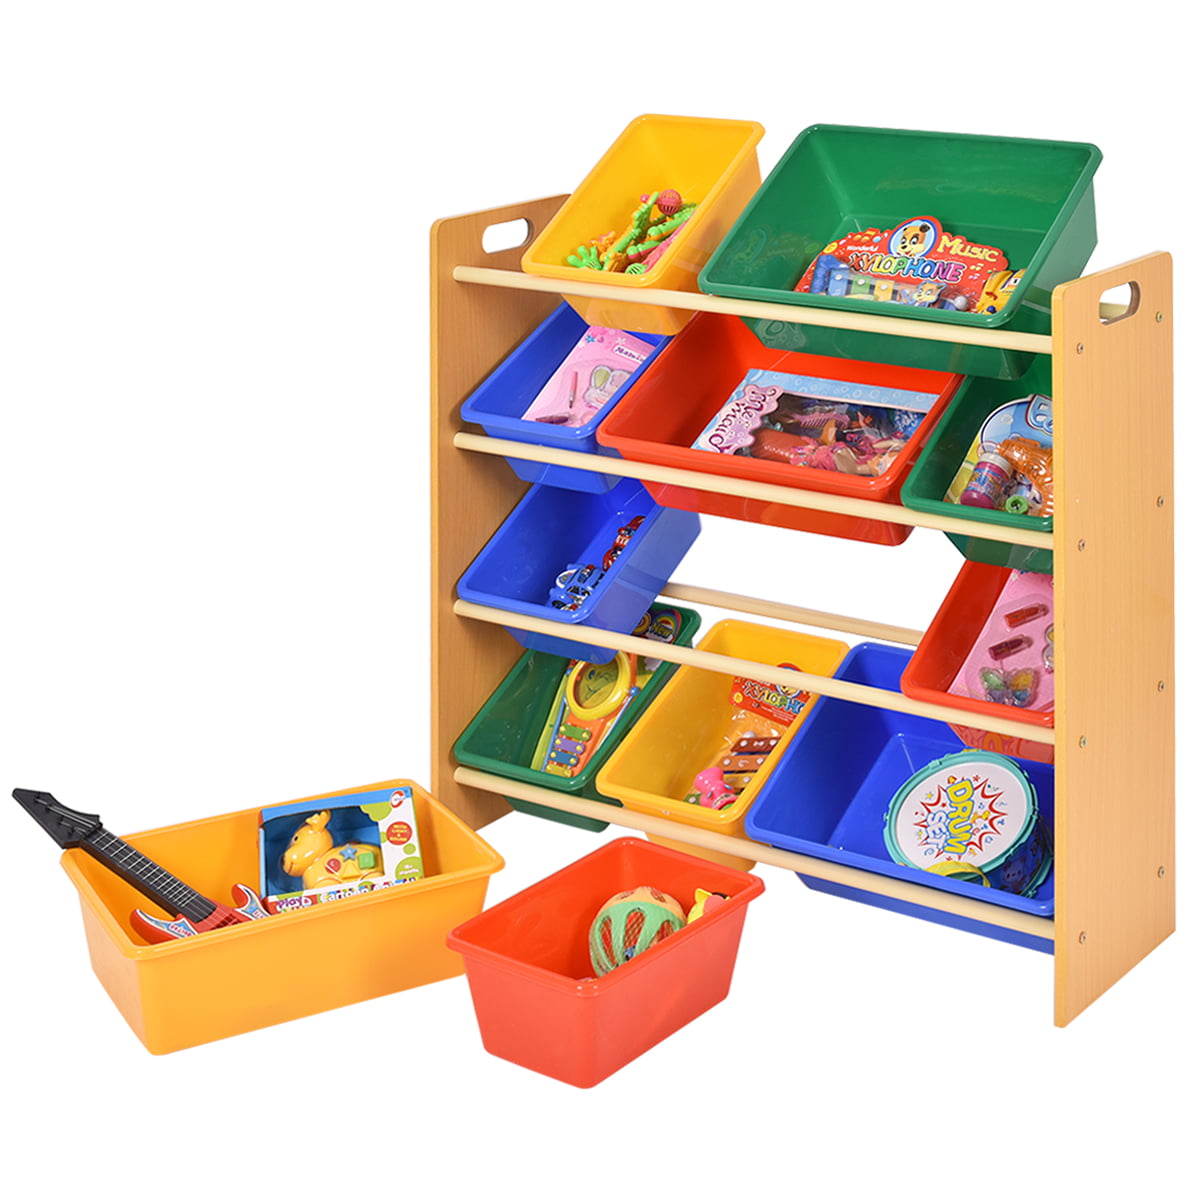 children's storage bins shelves